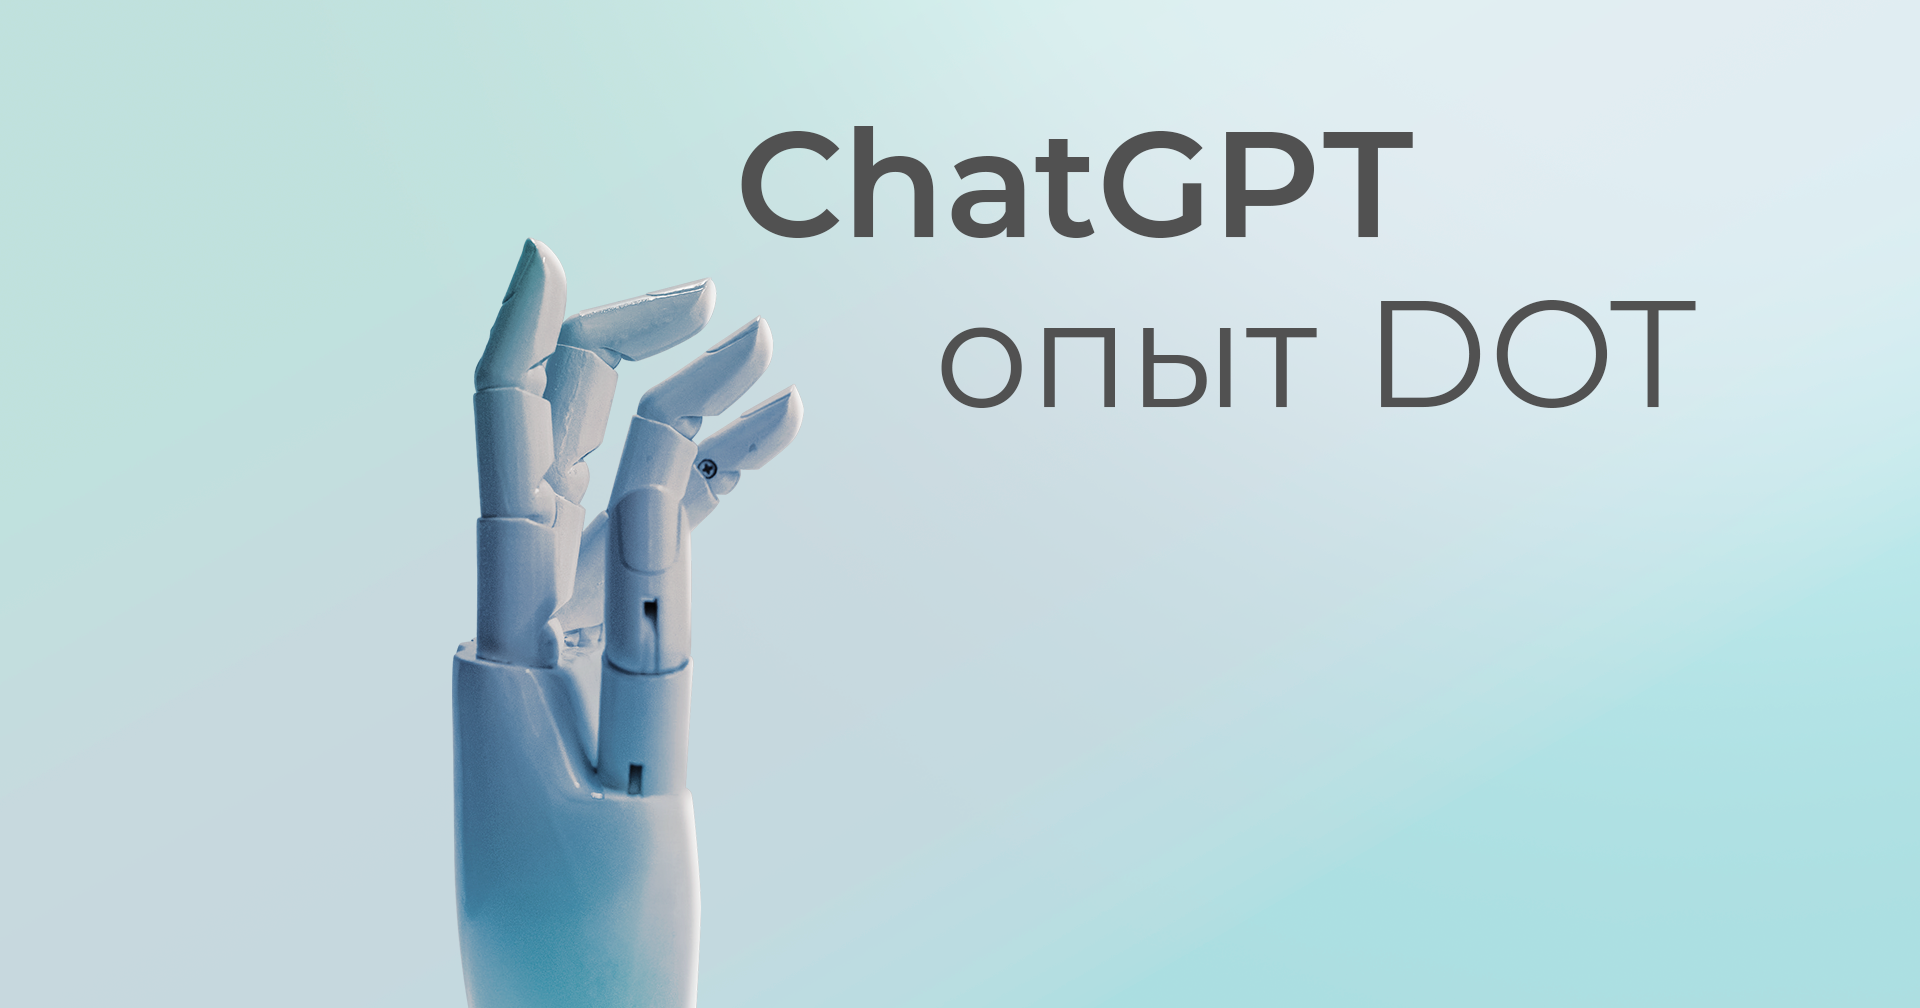 Работа в ChatGPT   |   Опыт DOT Digital Agency